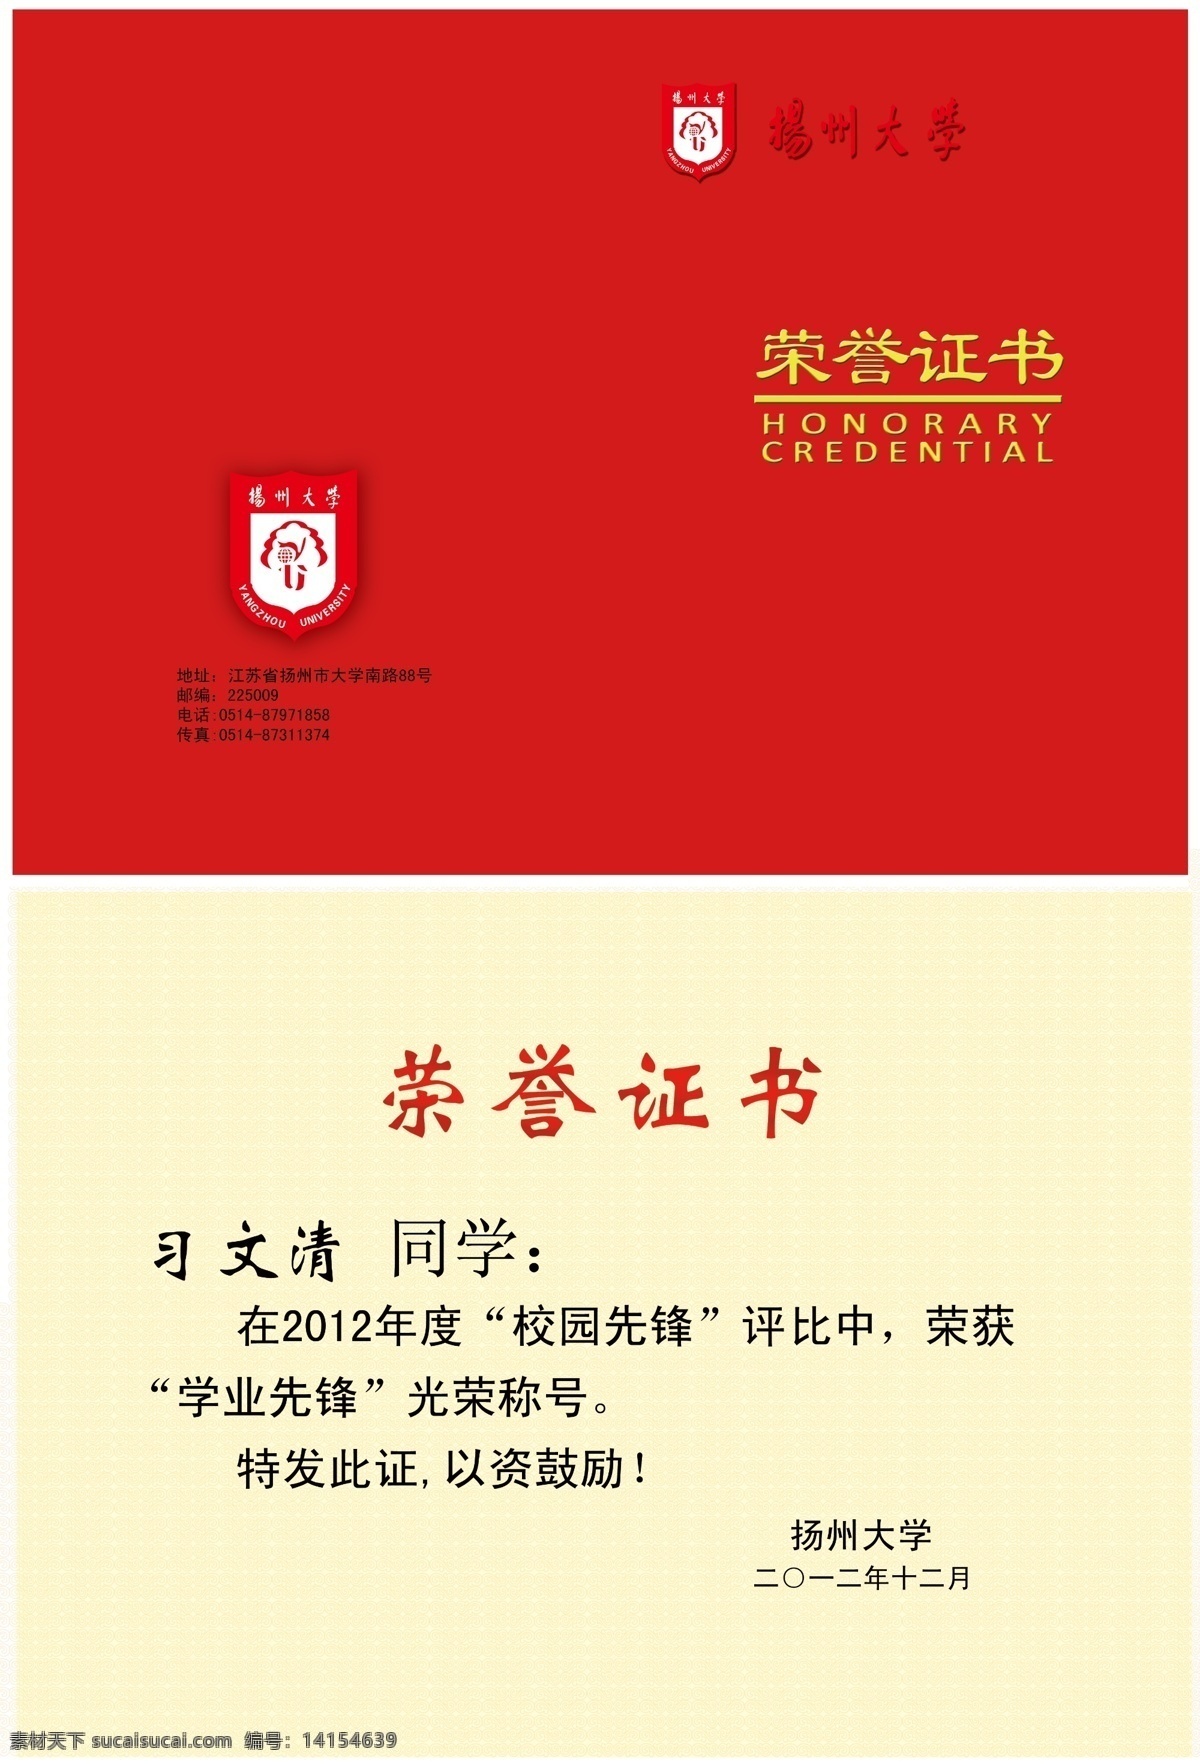 荣誉证书 广告设计模板 画册设计 源文件 证书封面 扬州大学 psd源文件